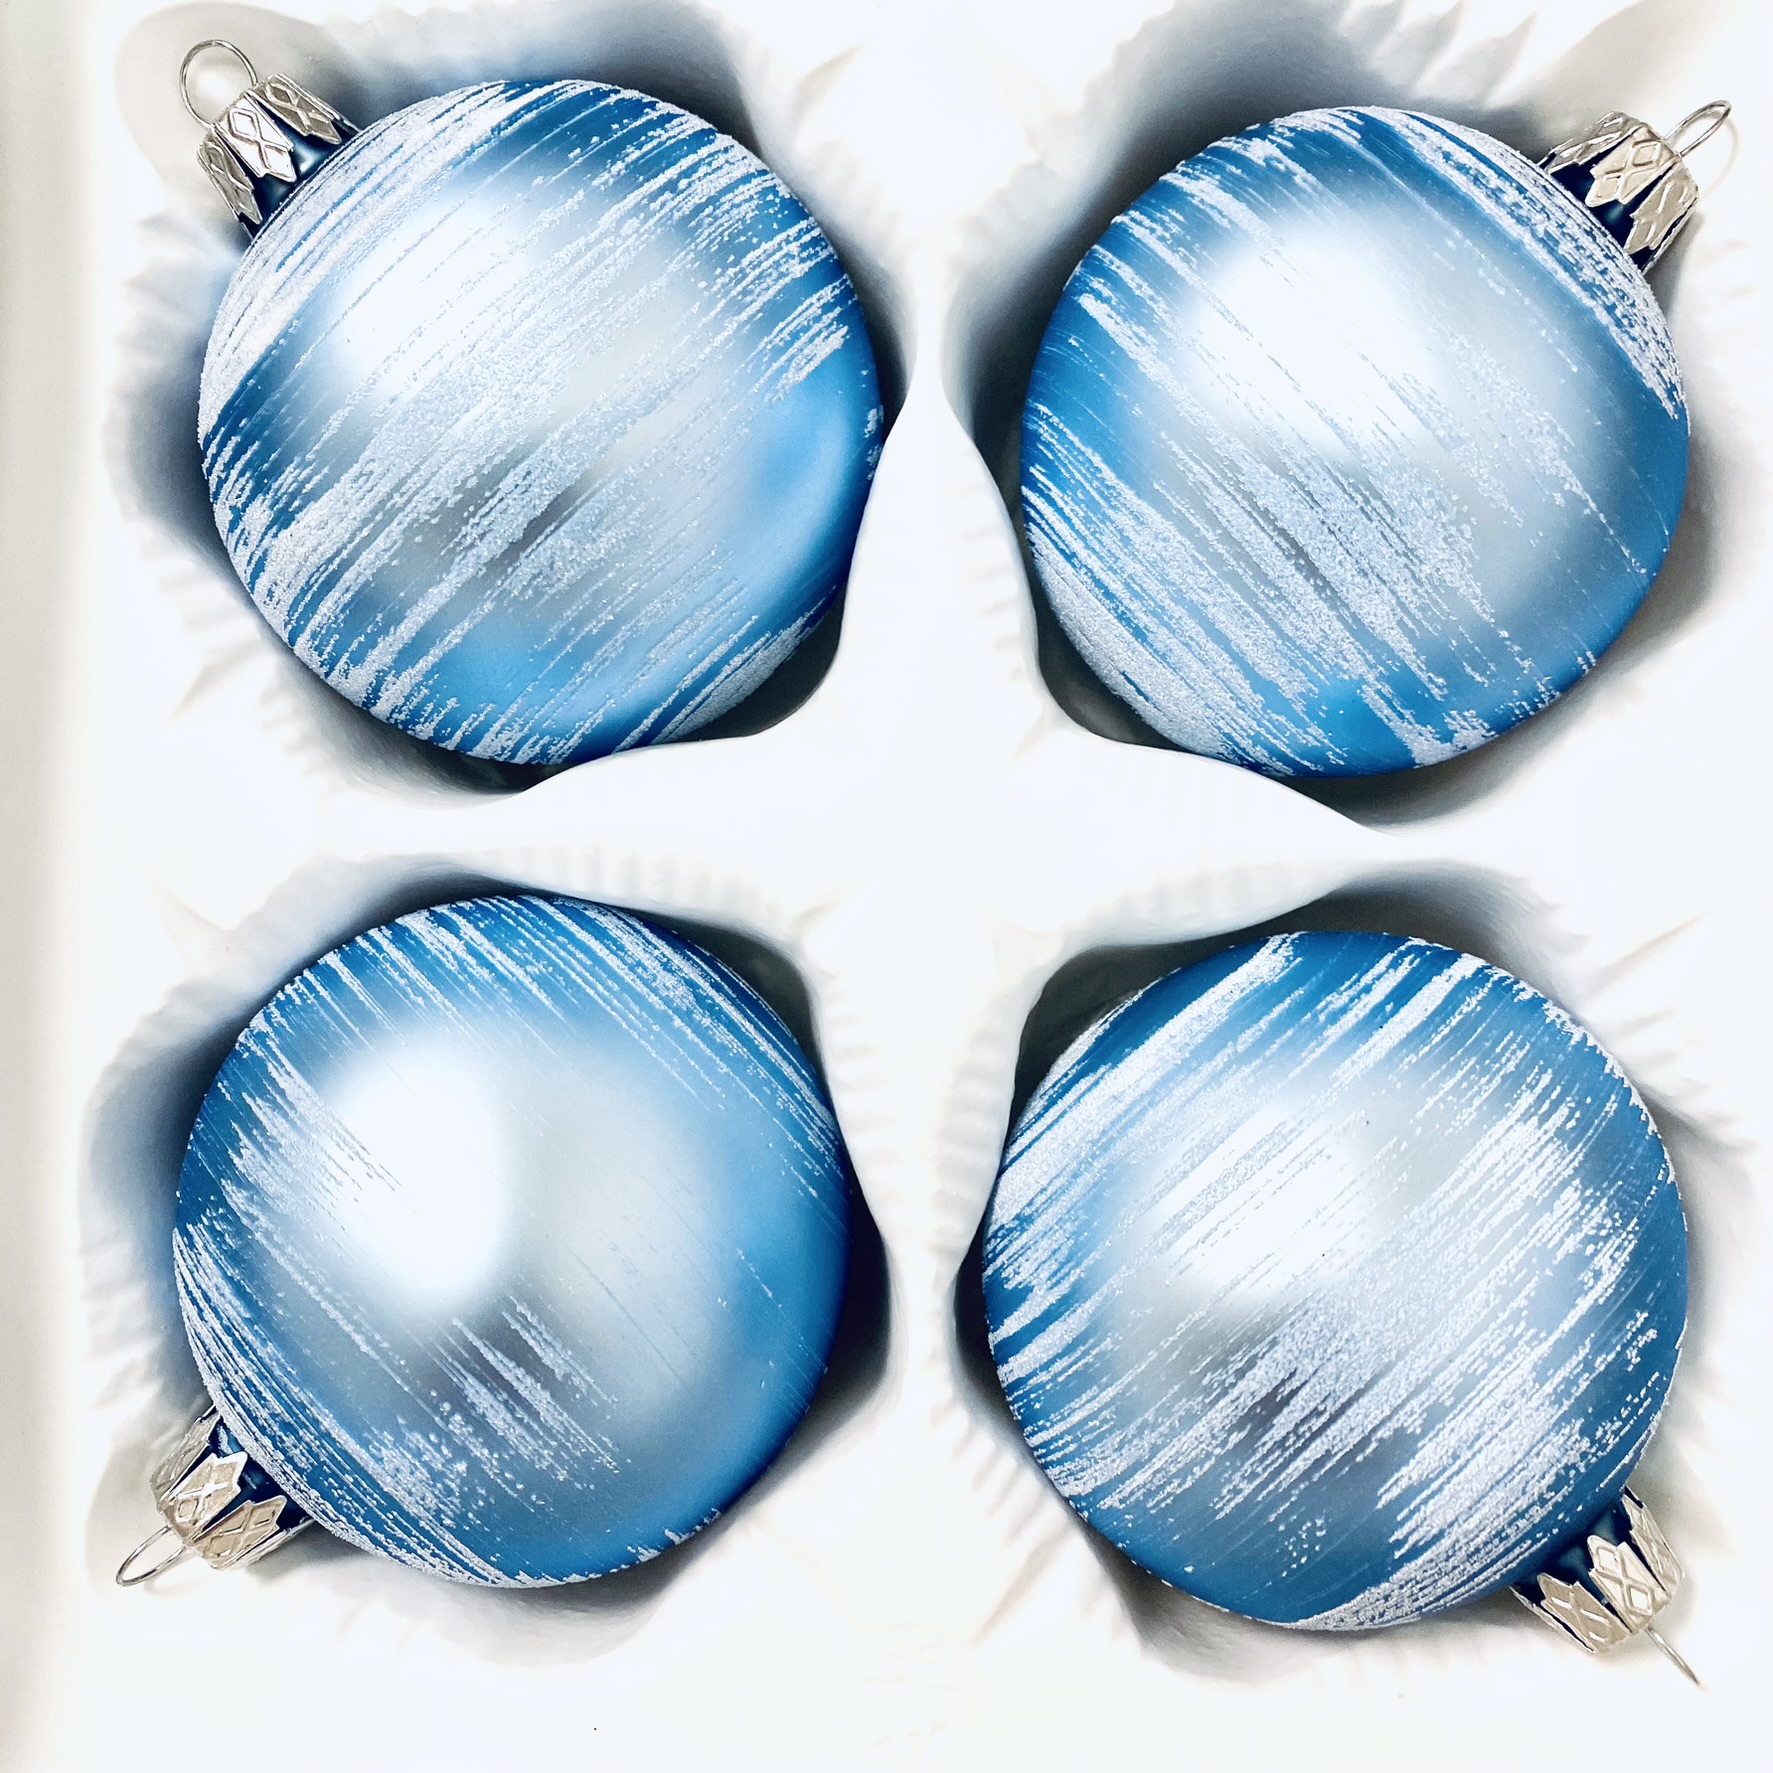 Ranní Modrá Mlha - Modrá sada 4 ks skleněných ozdob s malbou suchým štětcem (Velikost 7cm) Balení: 4ks, Barva: modrá, Velikost: 7 cm